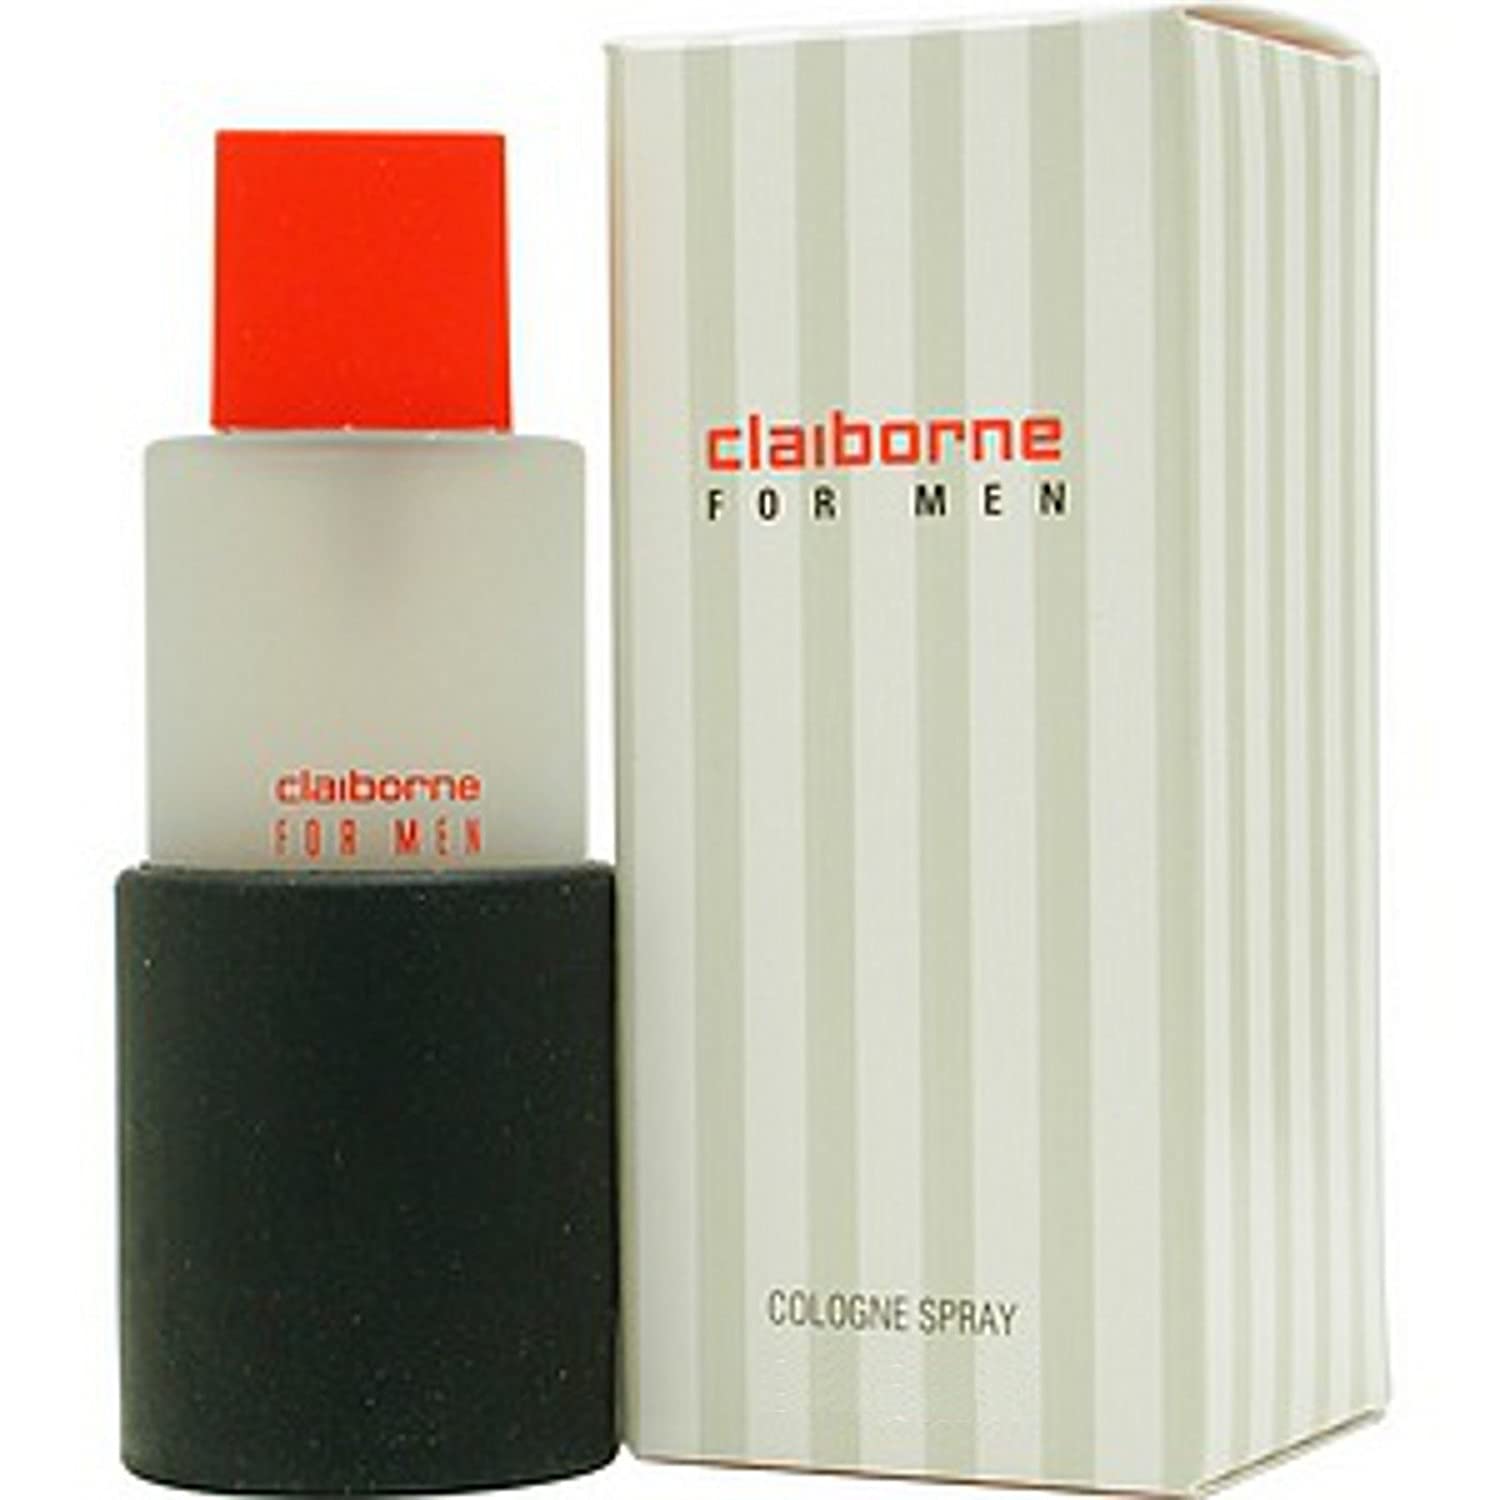 Liz Claiborne Claiborne by Liz Claiborne Men 1.7 oz Cologne Spray | FragranceBaba.com